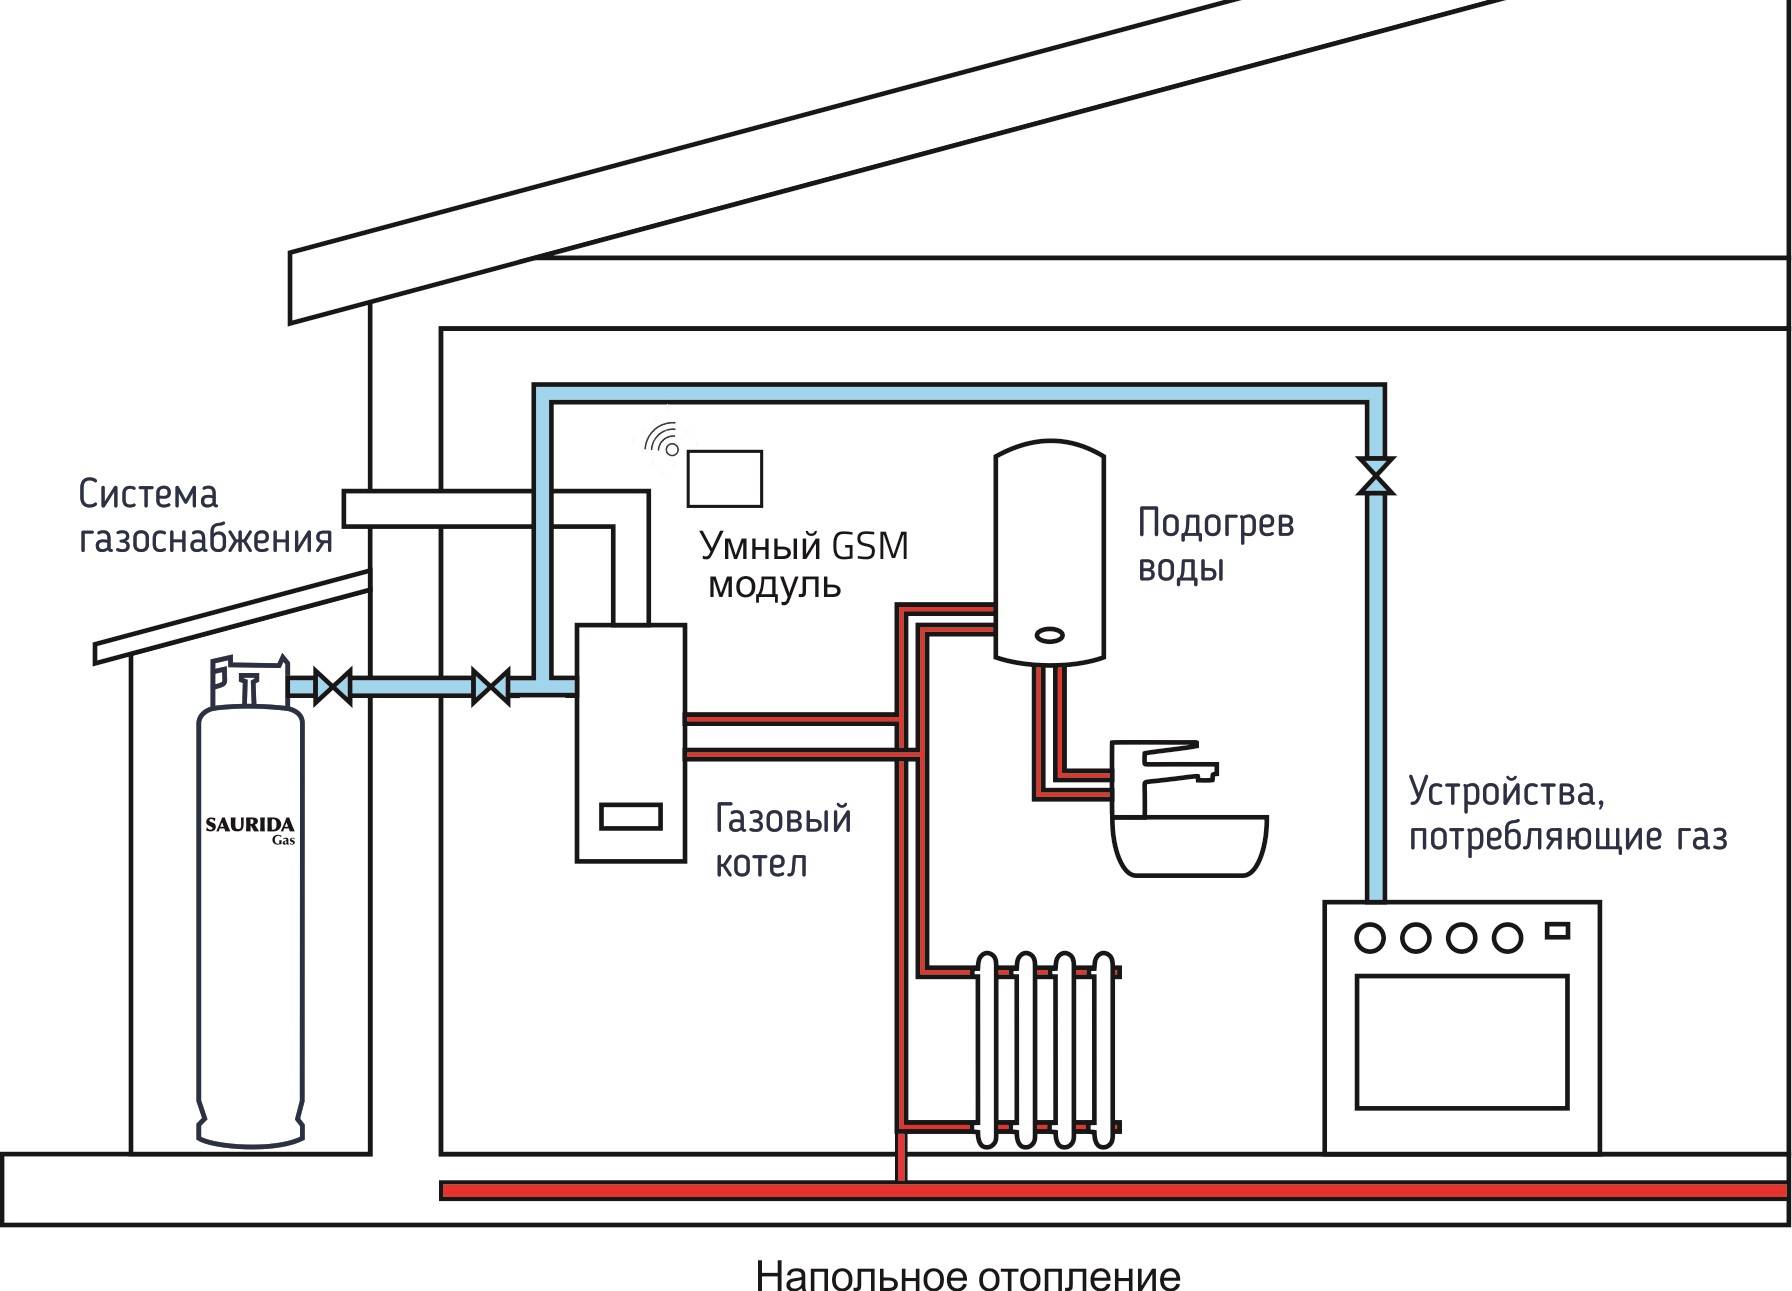 Автономное отопление в квартире, как реализовать в многоквартирном доме, получение разрешения